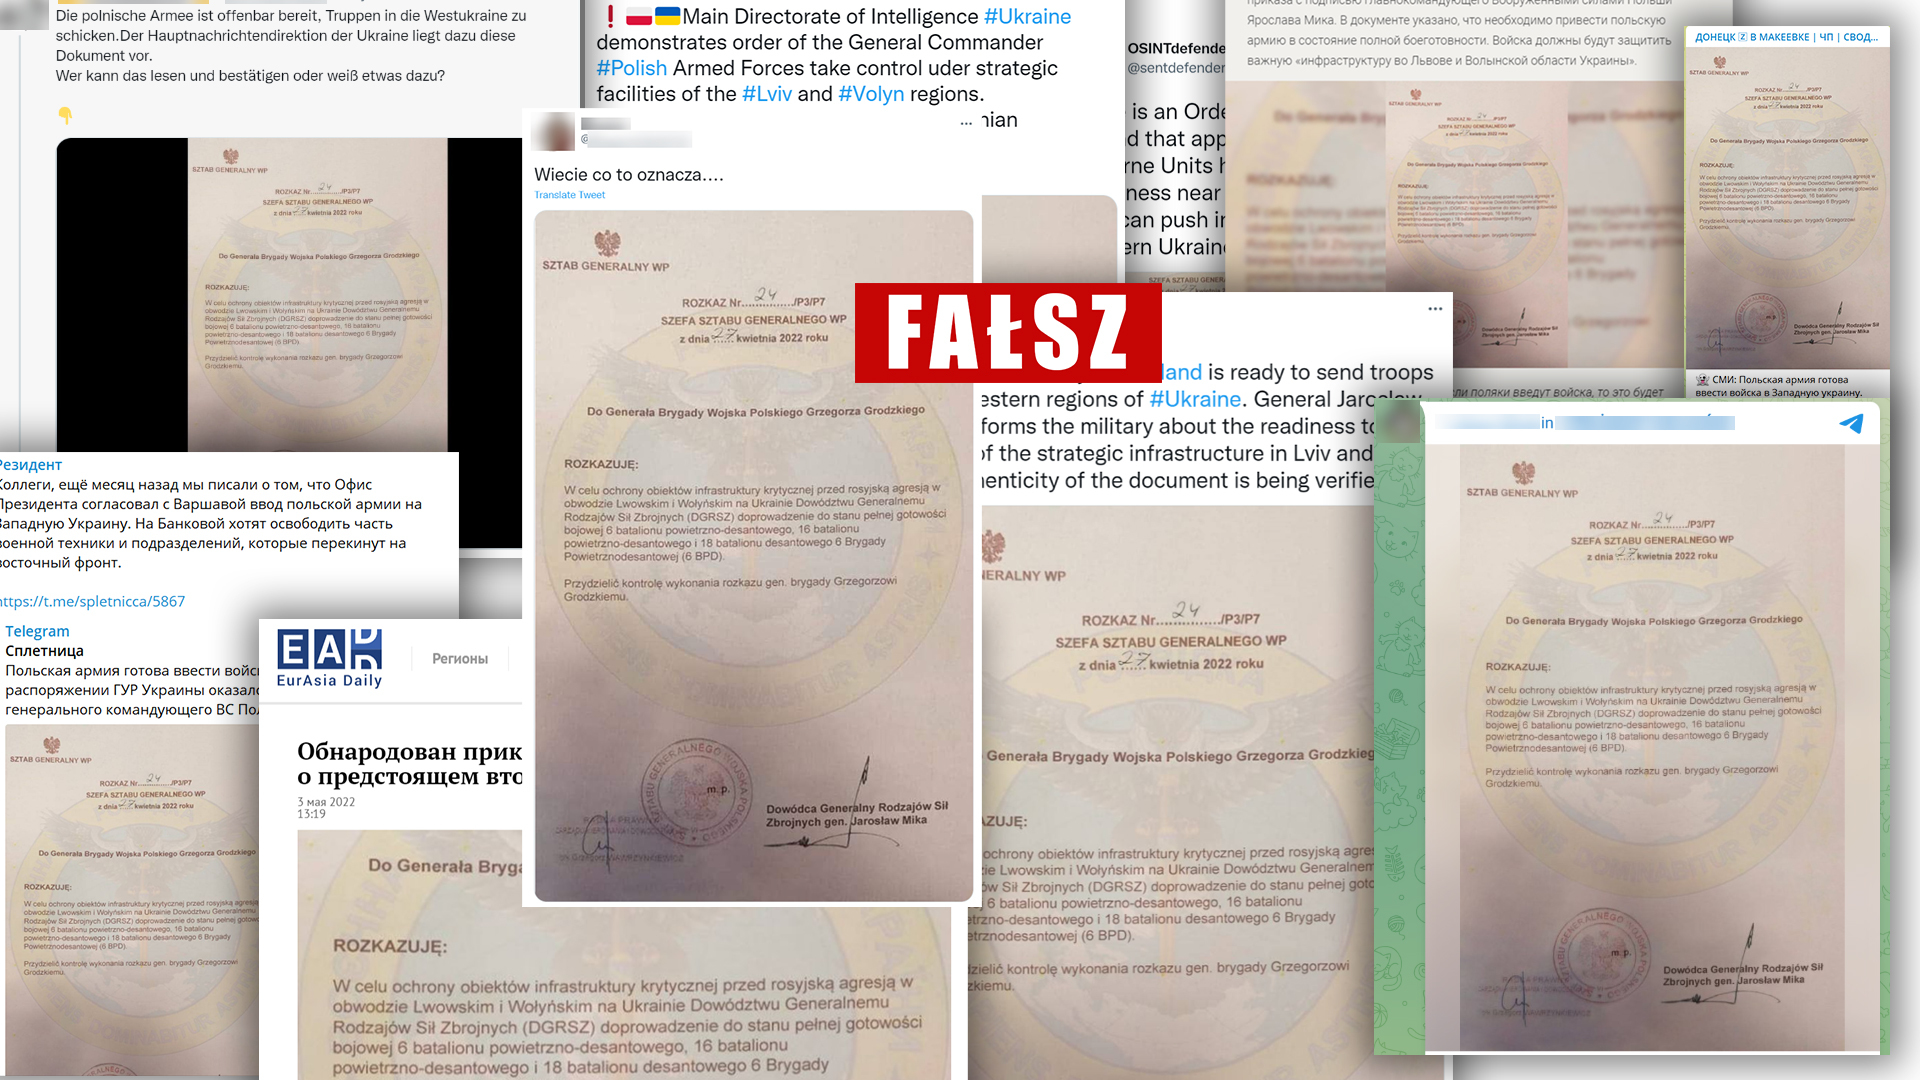 Fałszywy dokument trafił do polskiego internetu z prorosyjskich kont na Telegramie